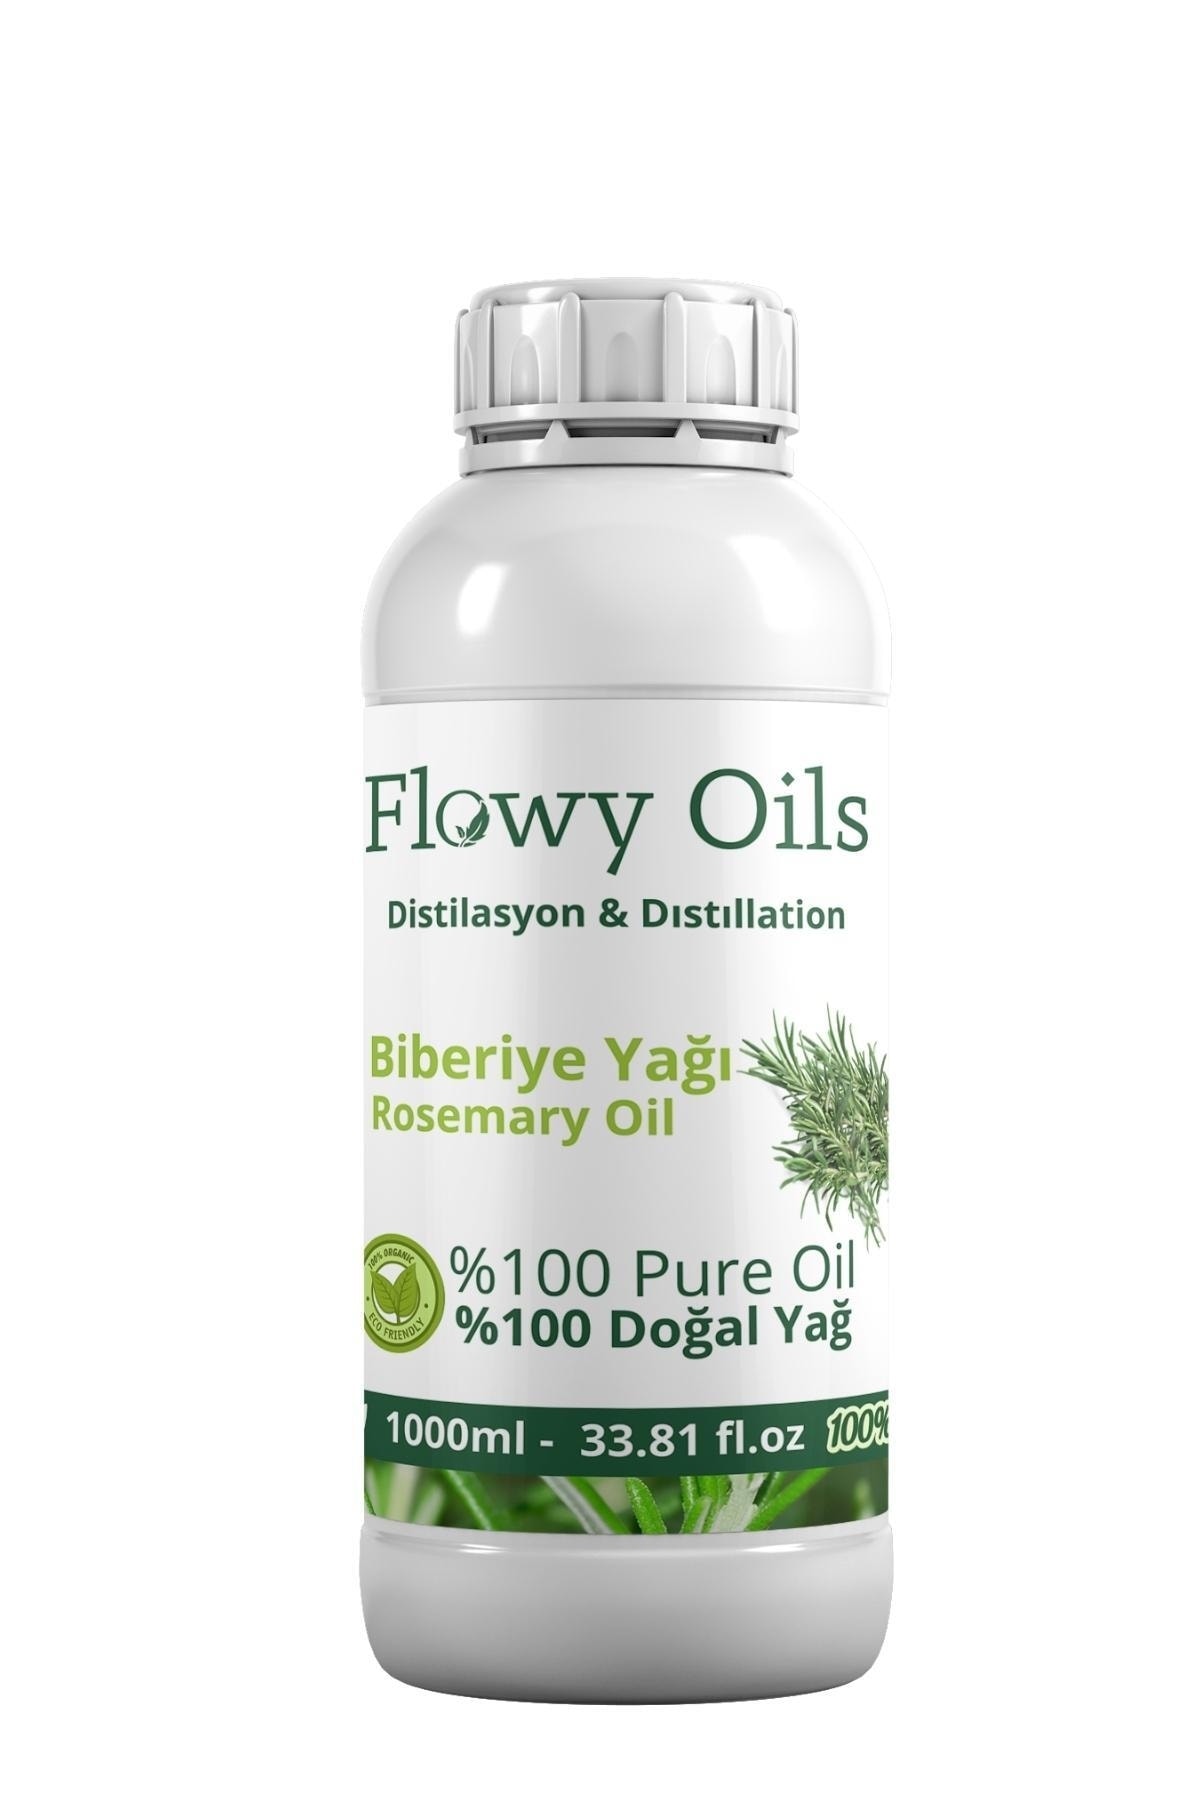 Flowy Oils Biberiye Yağı %100 Doğal Bitkisel Uçucu Yağ Rosemary Oil 1000ml 1 Litre